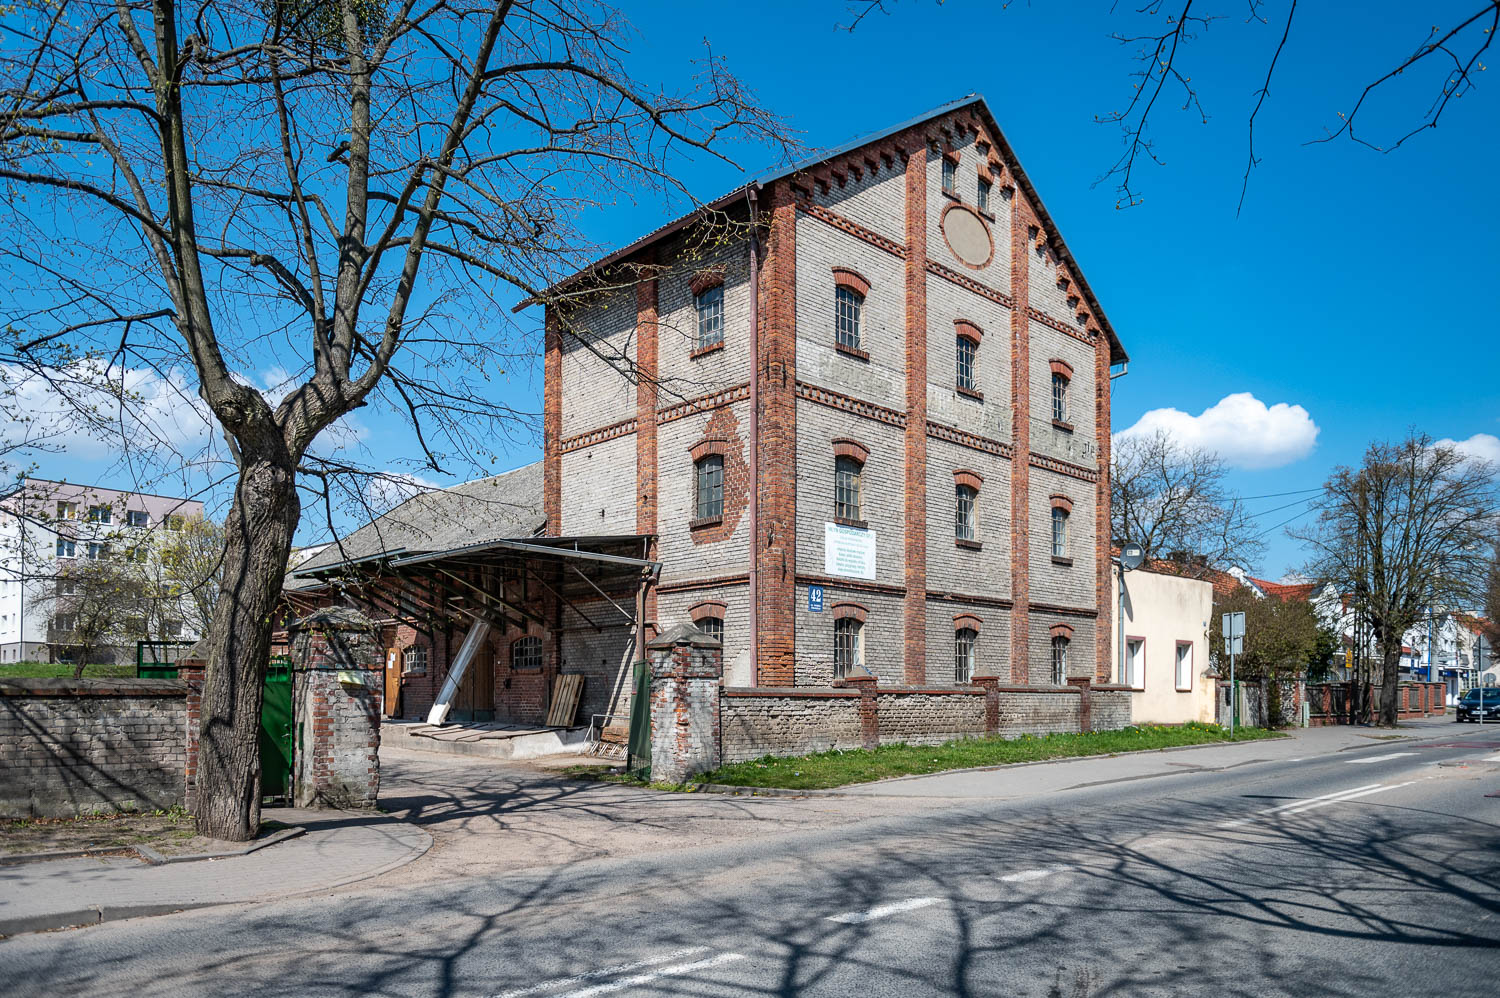 The Mill in Pruszcz Gdański